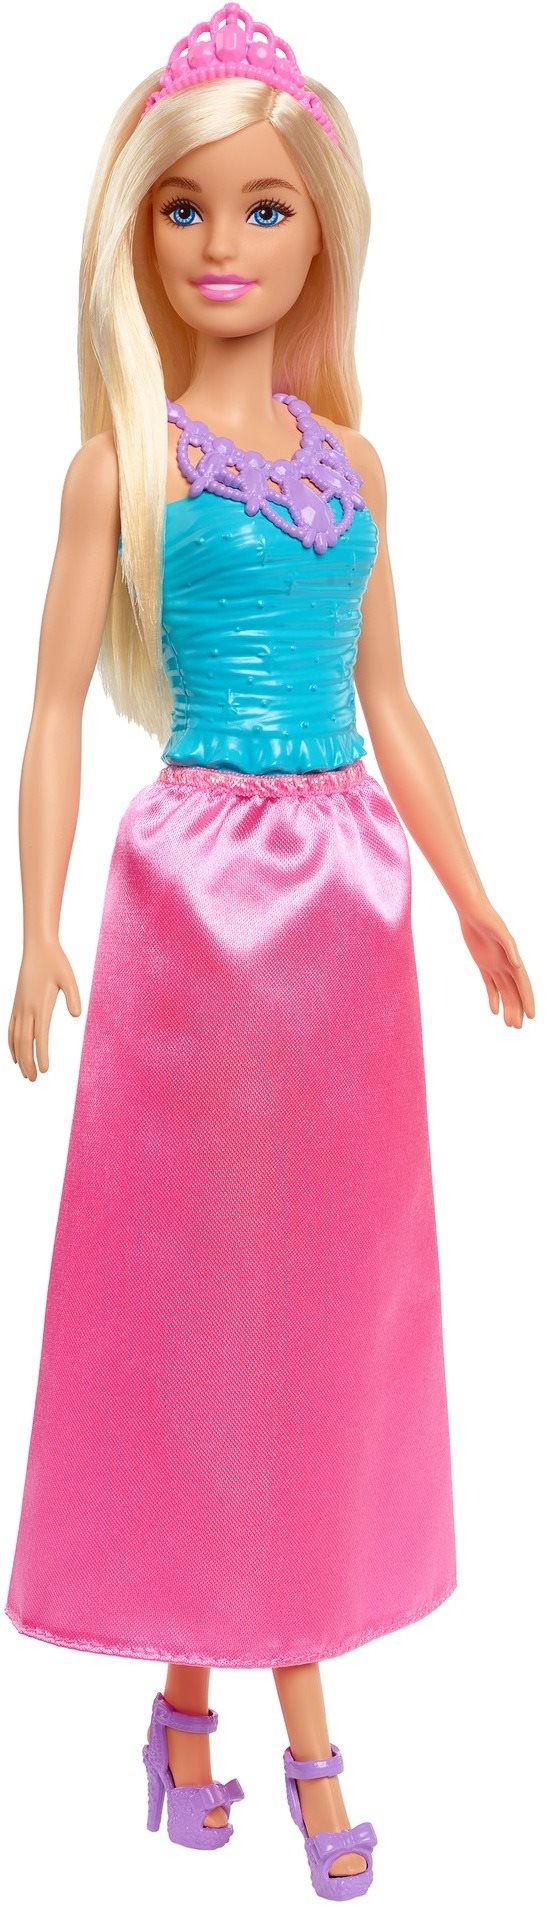 Barbie Hercegnő